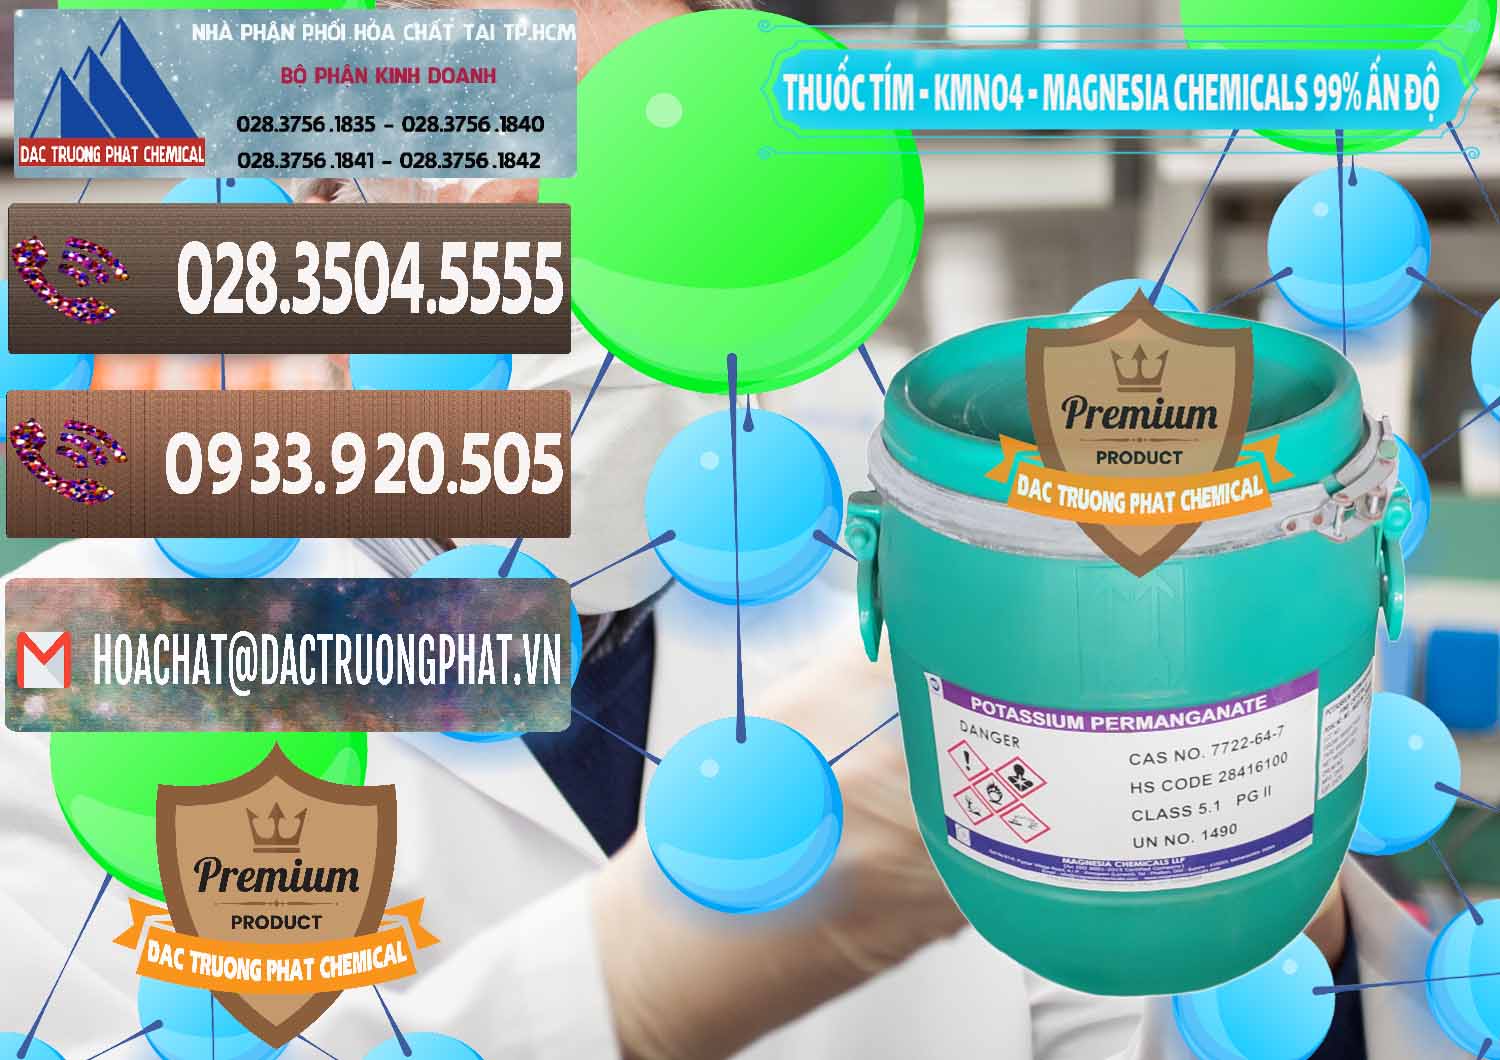 Nơi chuyên bán _ cung cấp Thuốc Tím - KMNO4 Magnesia Chemicals 99% Ấn Độ India - 0251 - Công ty chuyên bán & cung cấp hóa chất tại TP.HCM - hoachatviet.net